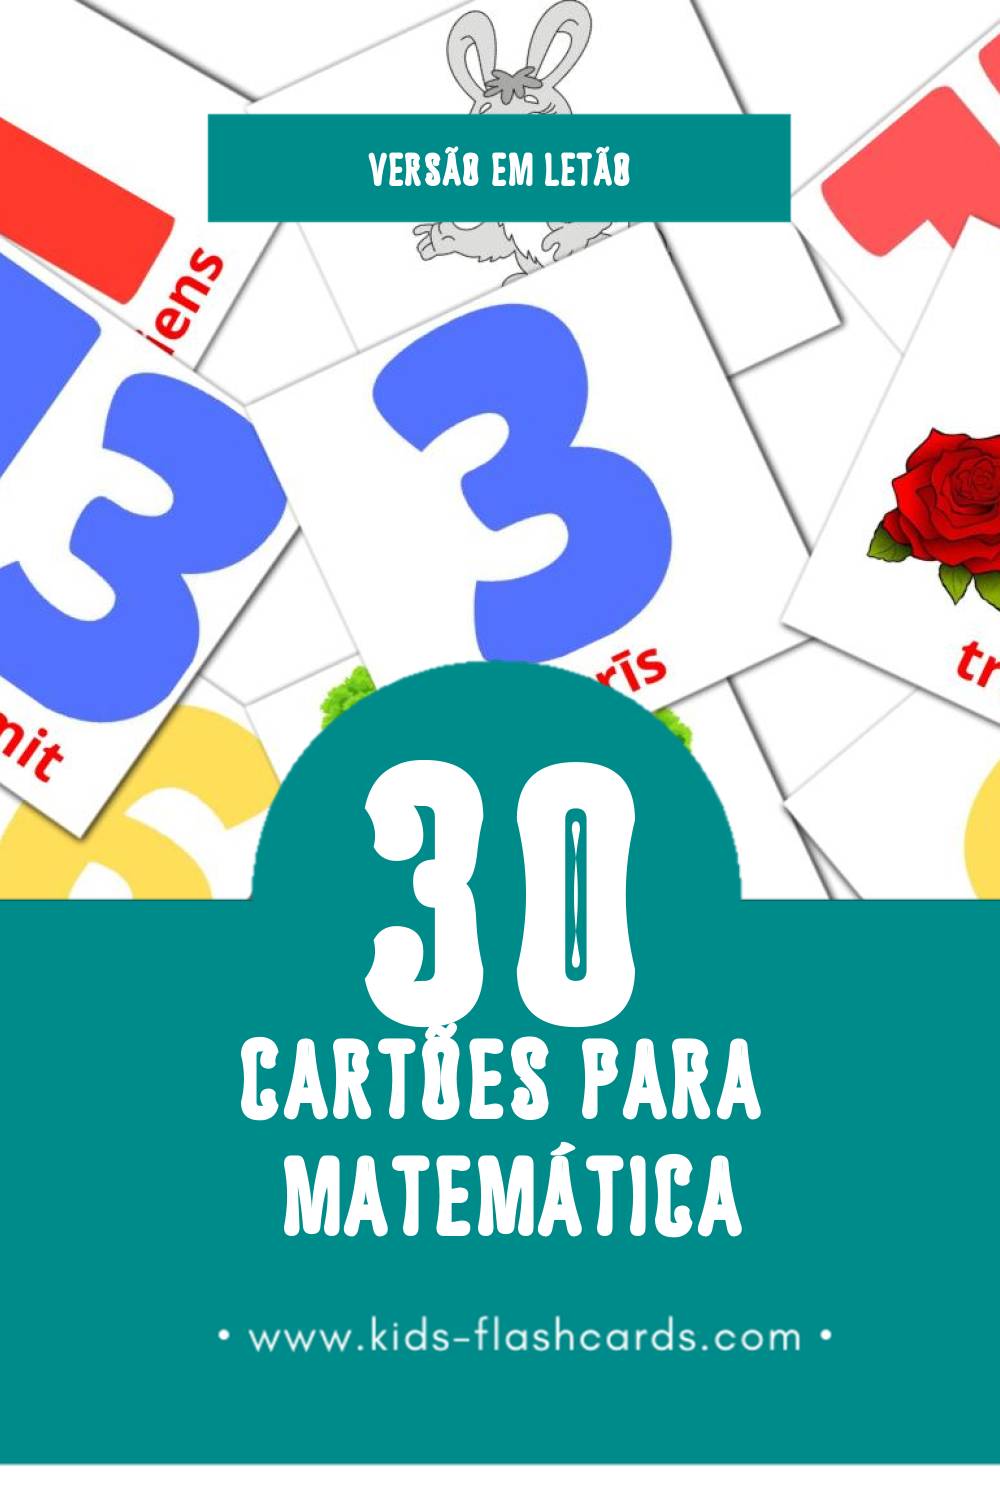 Flashcards de Matemātika Visuais para Toddlers (30 cartões em Letão)